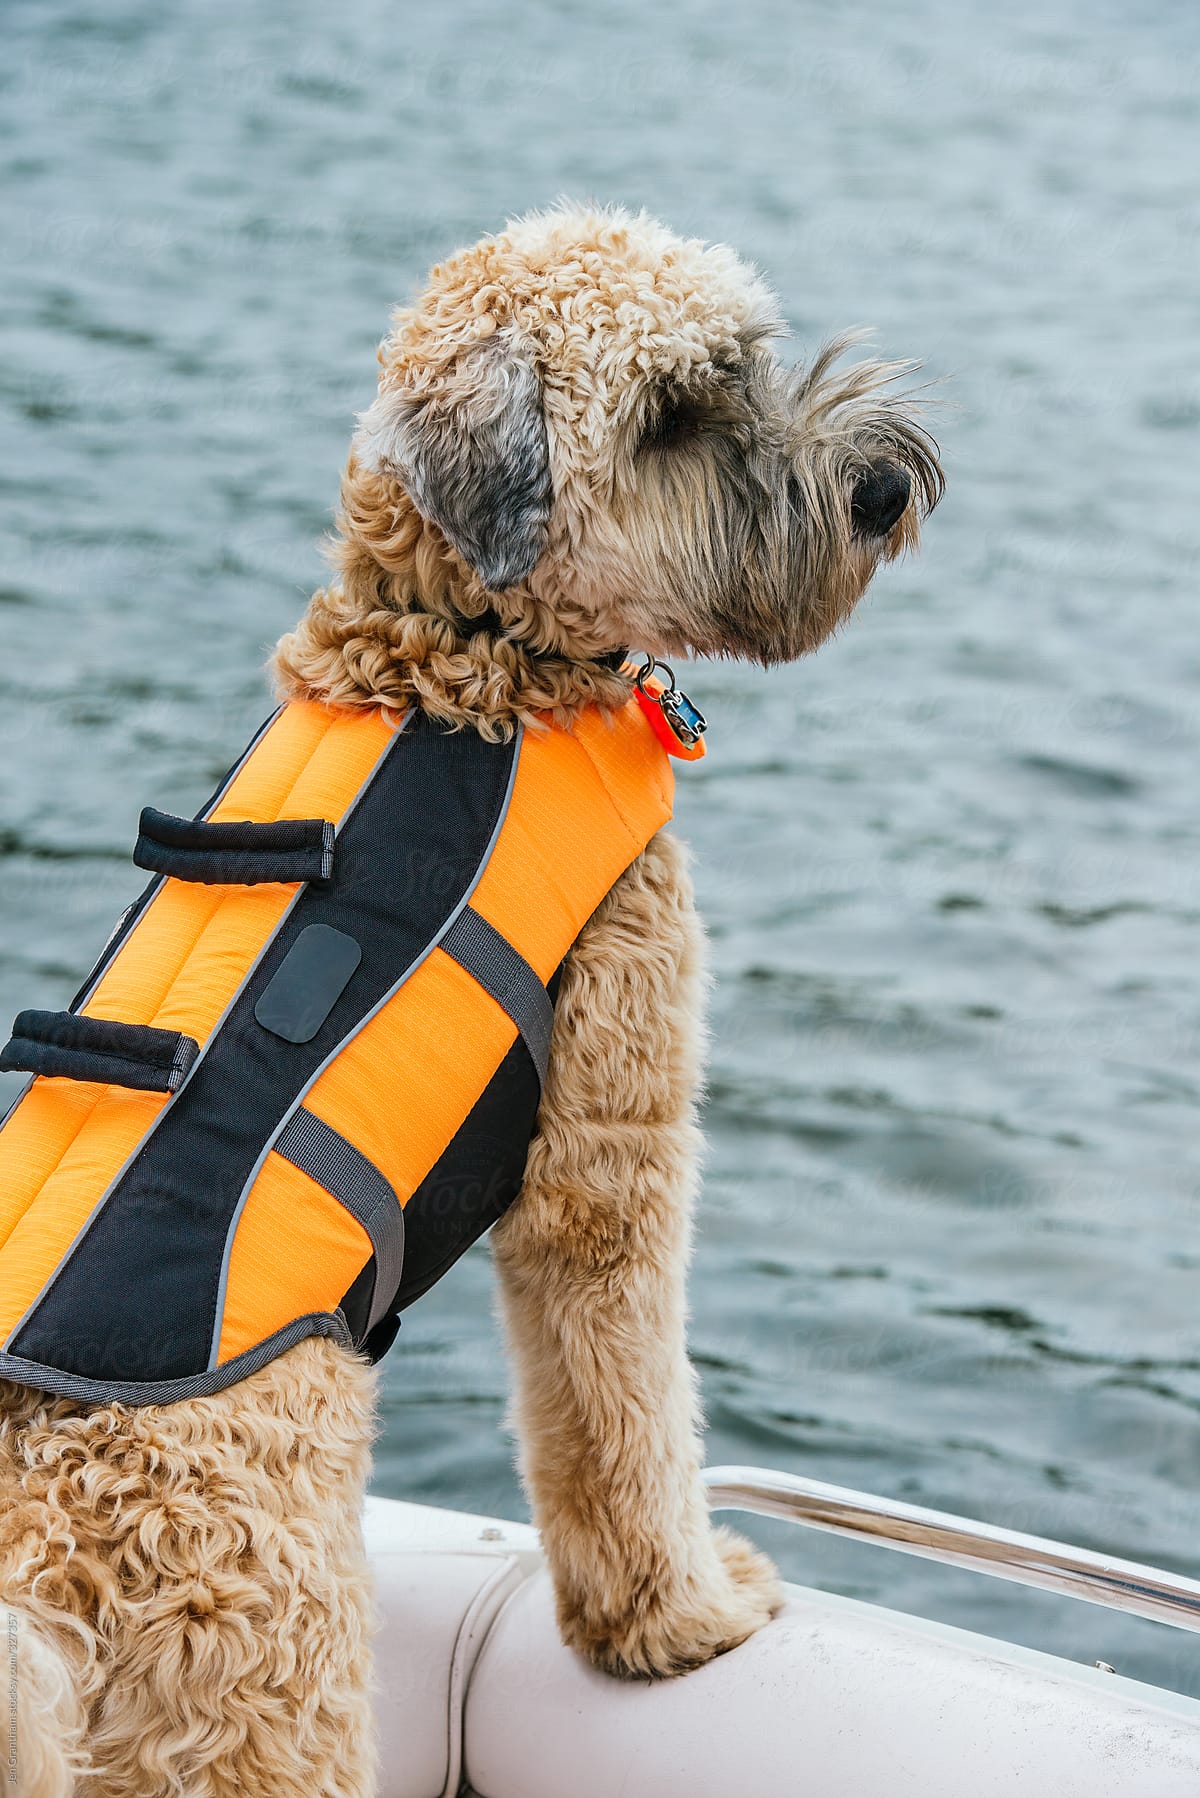 Soft coated wheaten terrier wearing lifejacket on a boat